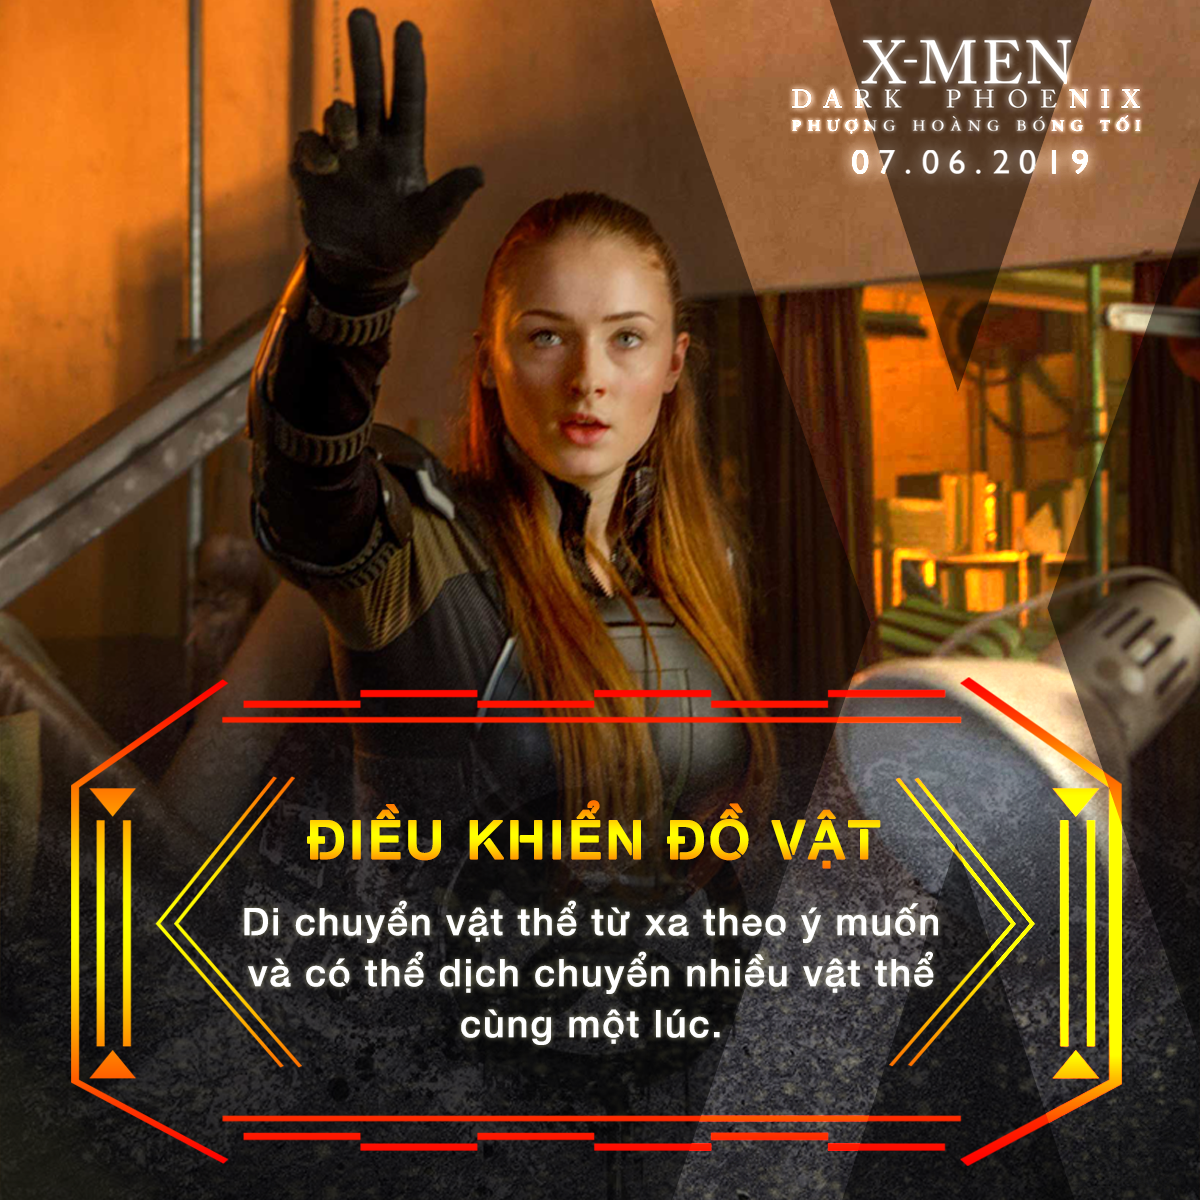 Choáng ngợp với sức mạnh bá đạo của người đẹp Jean Grey trong vũ trụ dị nhân X-Men - Ảnh 3.